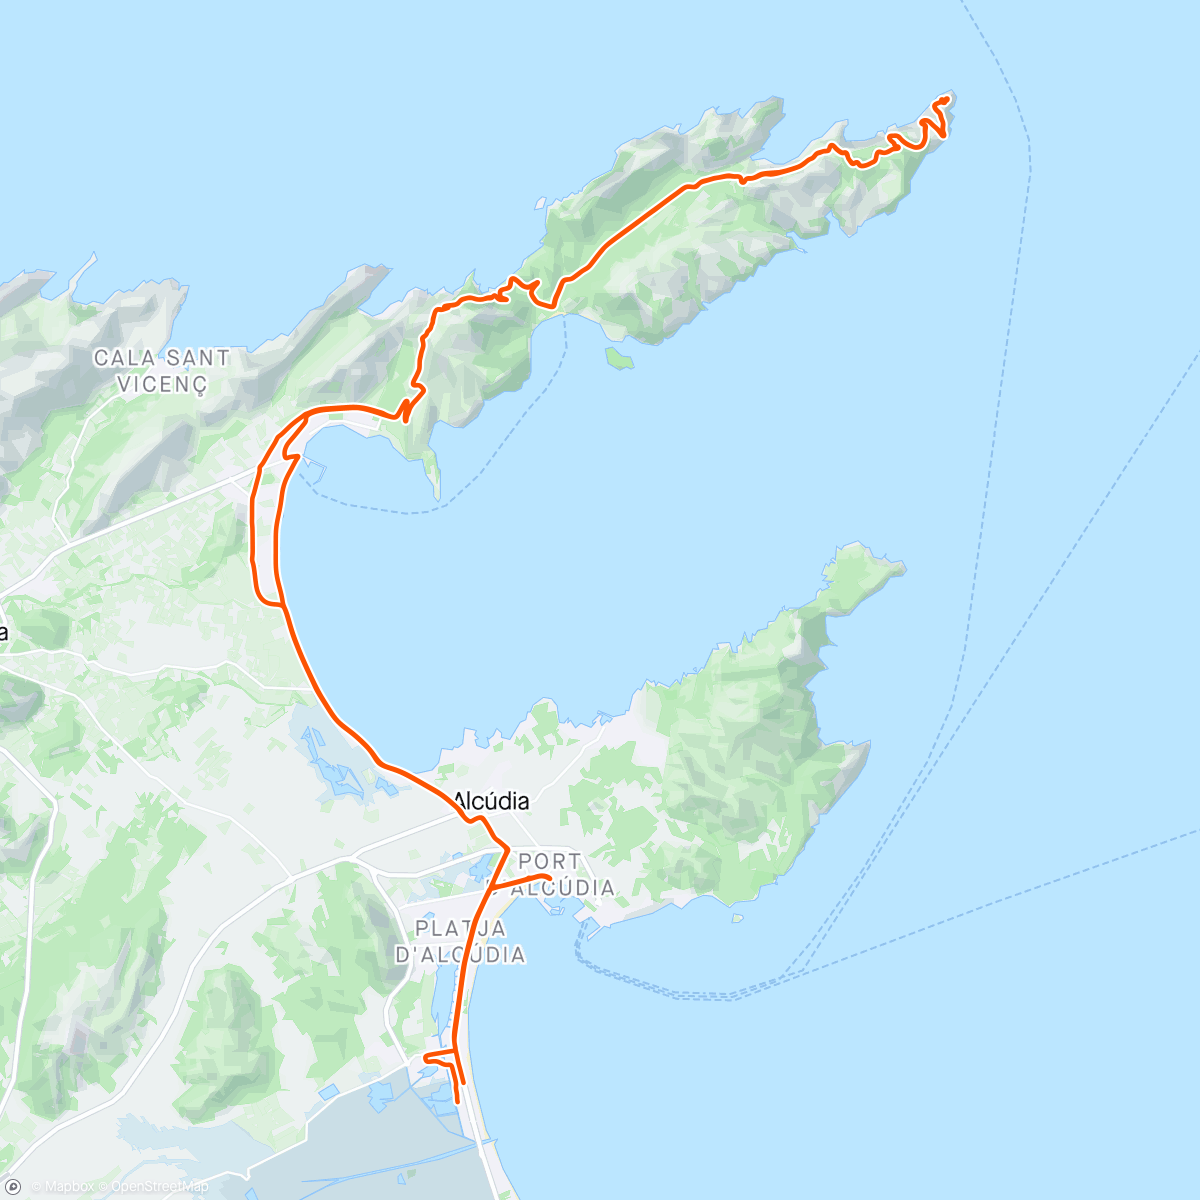 アクティビティ「Cap Formentor i dag 🚴🏻‍♂️🚴🏻‍♂️🚴🏻‍♂️🚴🏻‍♂️🚴🏻‍♂️👍🏻😎🇪🇸」の地図